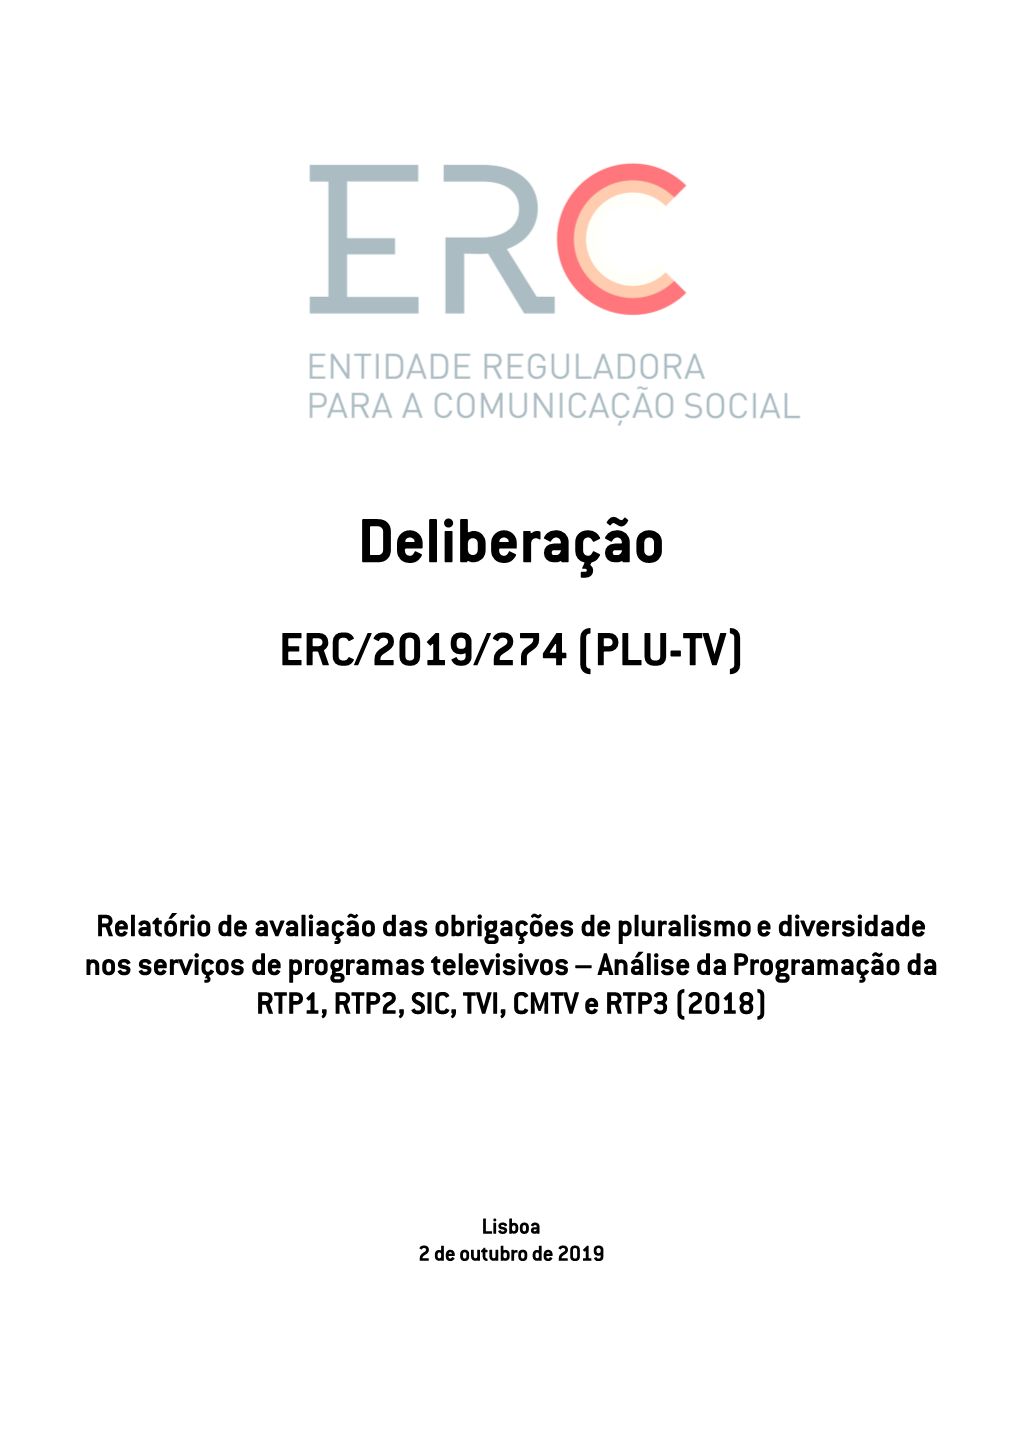 Deliberação ERC/2019/274 (PLU-TV)